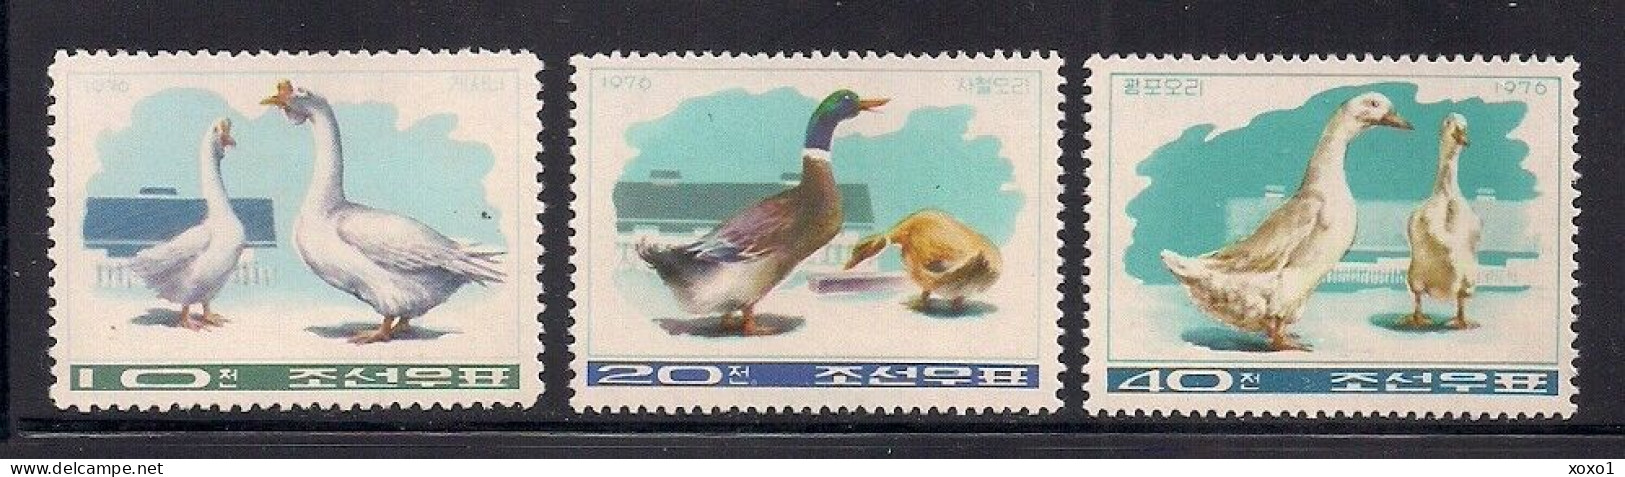 Korea, North 1976 MiNr. 1467 - 1469 Korea-Nord  Vögel Birds Farm  3v  MNH ** 7.00 € - Ganzen